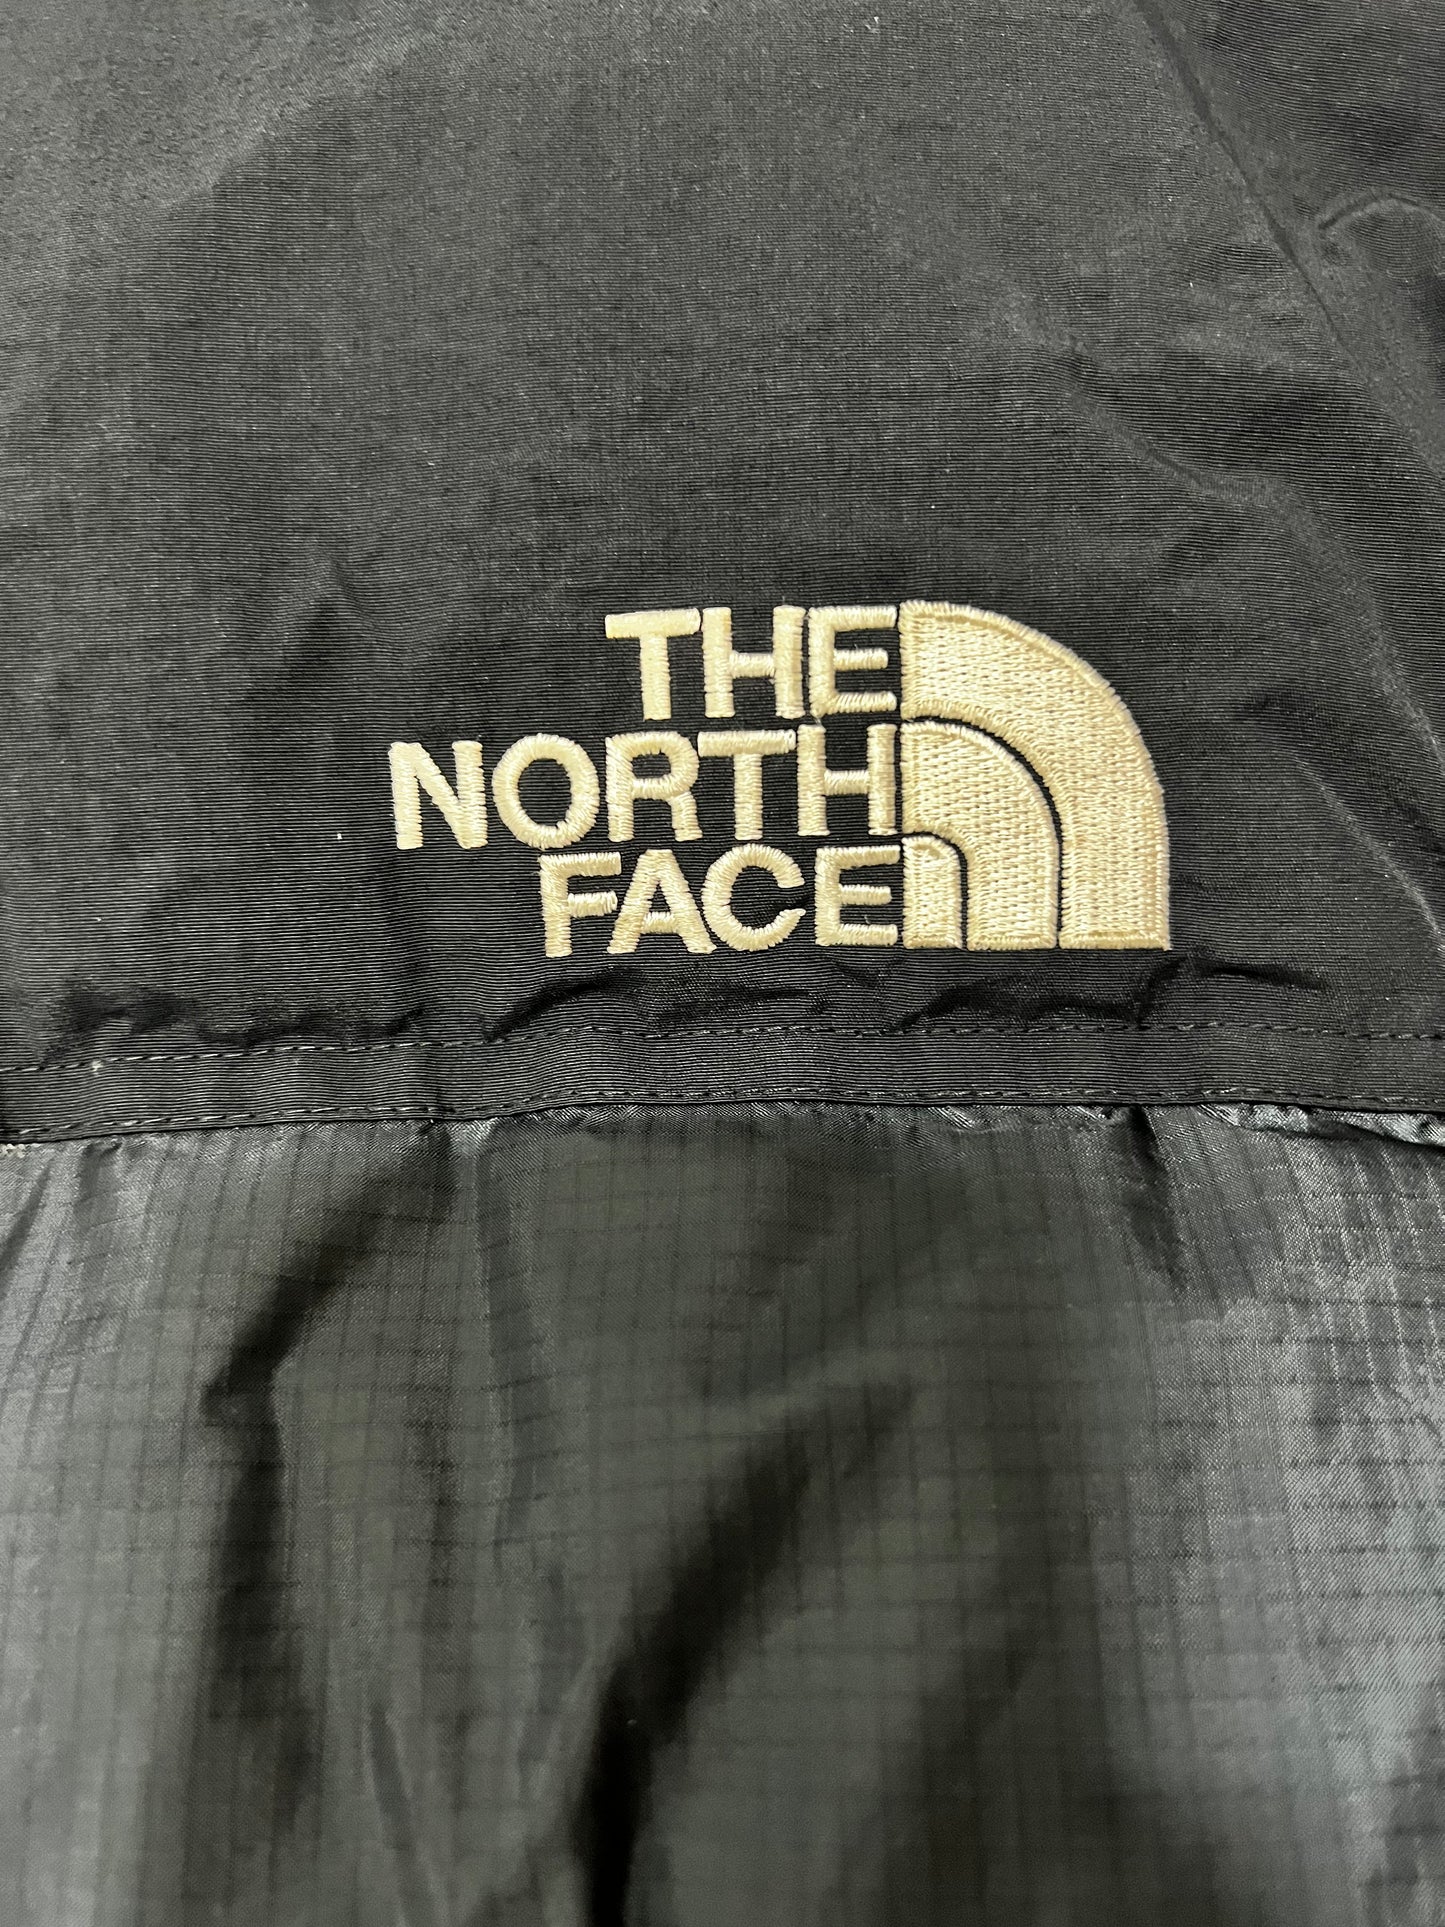 10063【THE NORTH FACE】ザノースフェイス メンズ サミットシリーズ バルトロ ダウンジャケット 700フィル ブラック 100